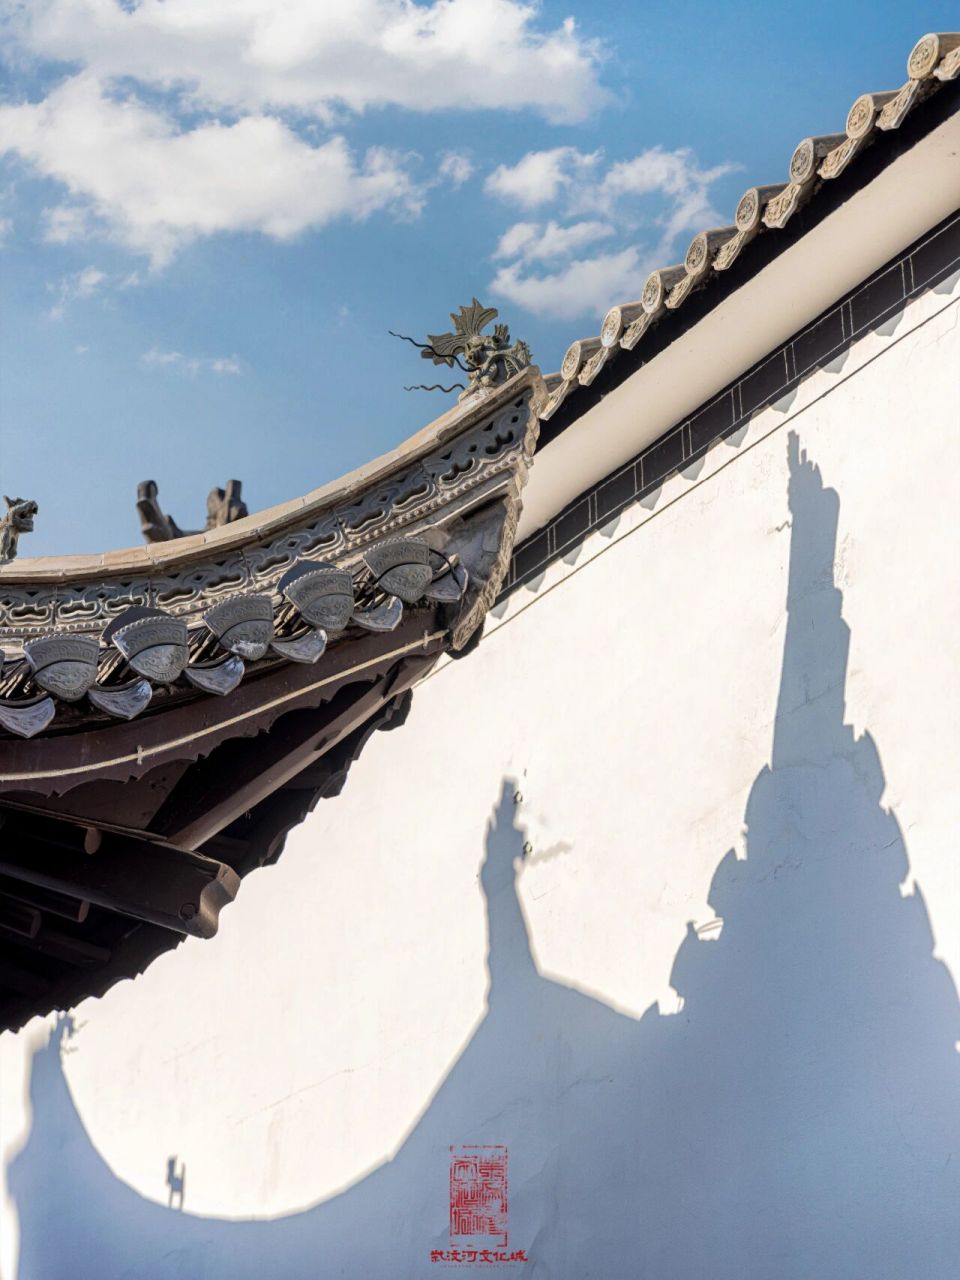 【徽派古建筑详解——飞檐】 飞檐,指的是中国传统建筑屋面中的转角处